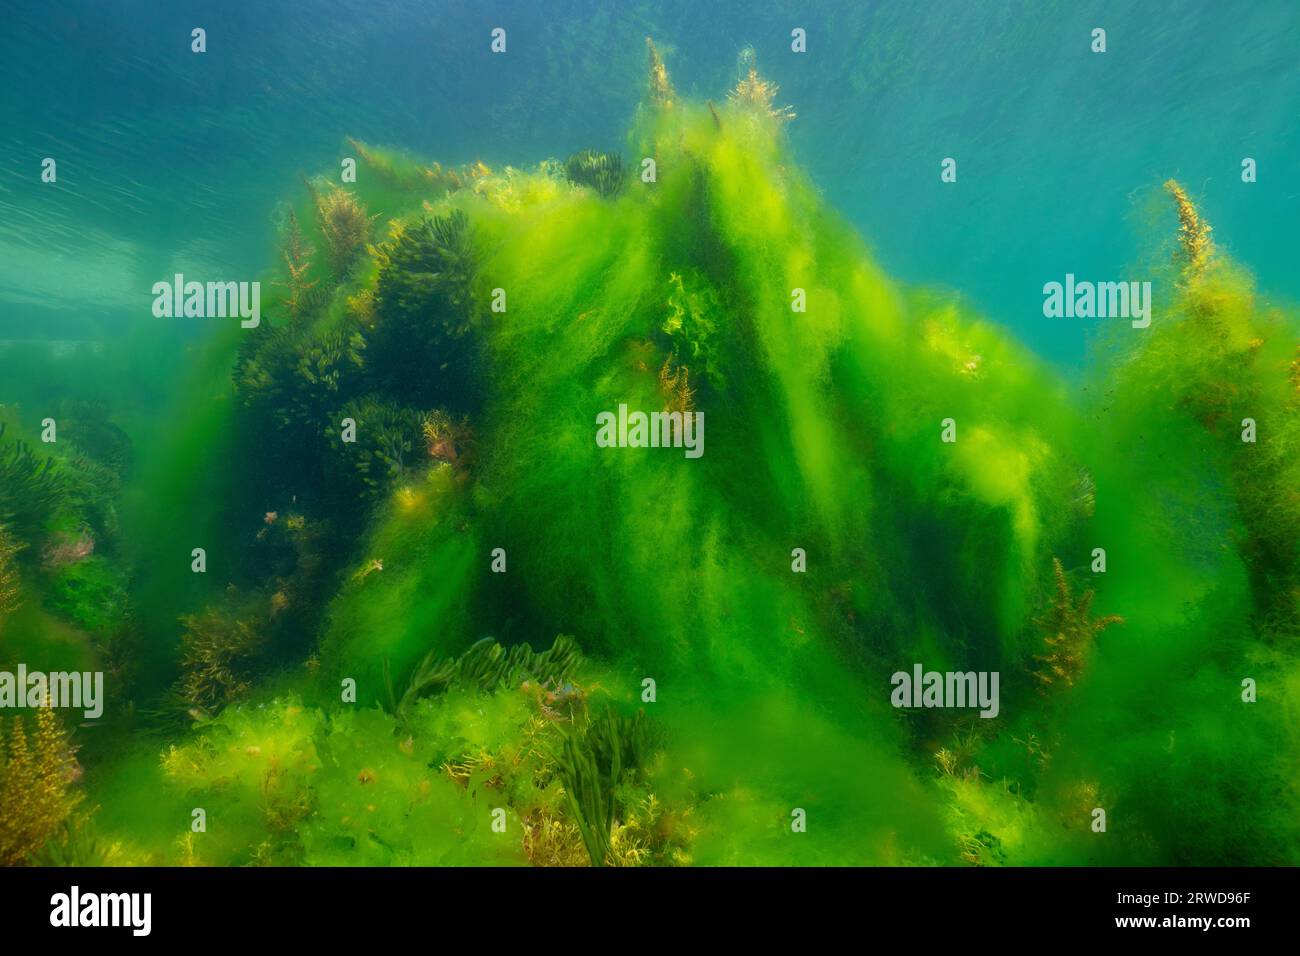 Floraison des algues sous l'eau dans l'océan Atlantique, algues filamenteuses couvrant d'autres algues, scène naturelle, Espagne, Galice, Rias Baixas Banque D'Images